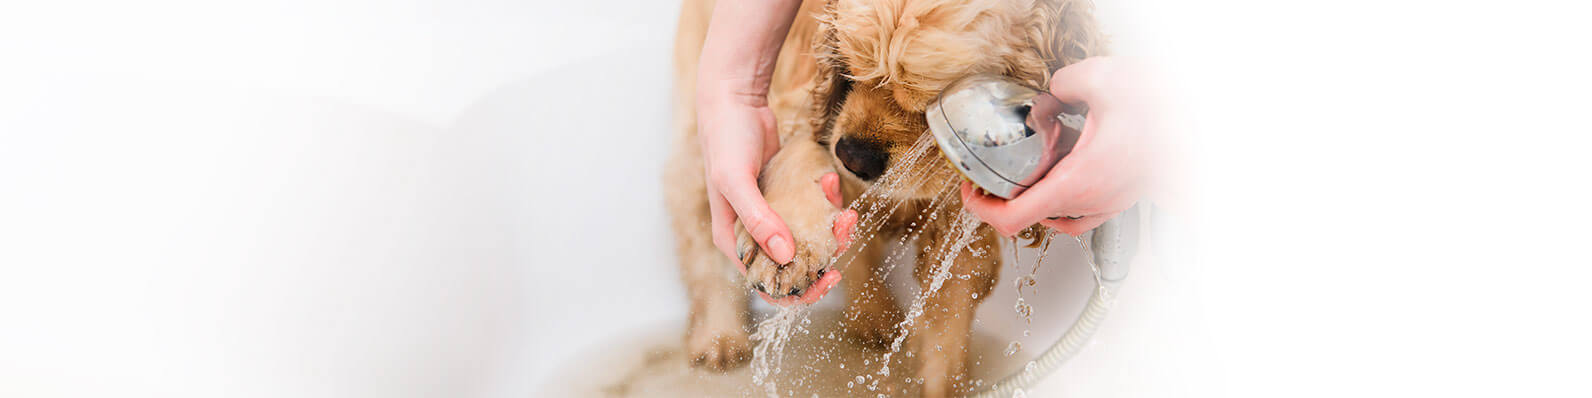 El alcohol gel en mascotas tiene consecuencias desfavorables en la salud de tu perro o gato. Te presentamos los productos para su higiene en la cuarentena